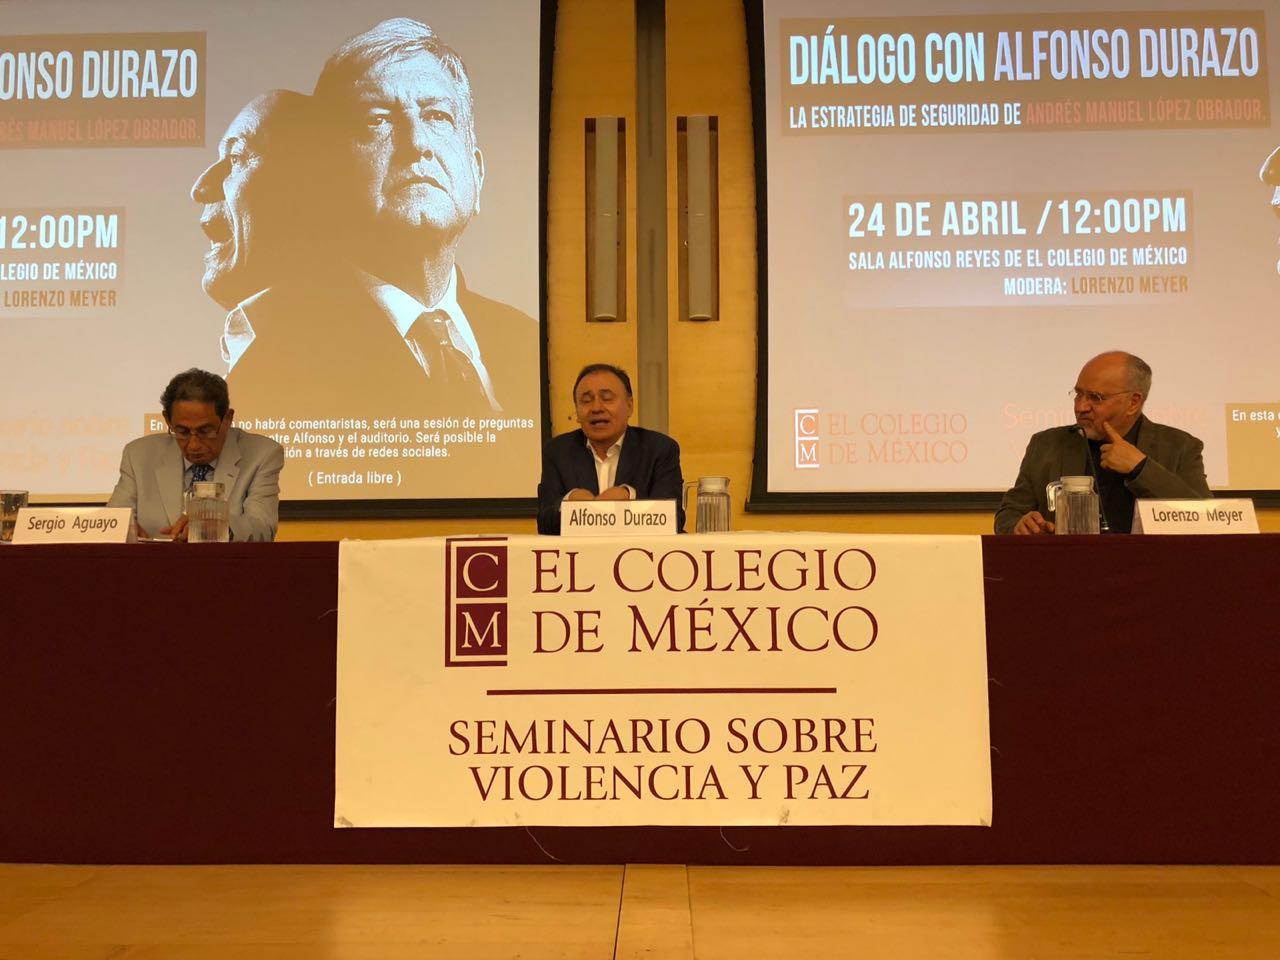 Cerraremos el ciclo de guerra: Alfonso Durazo presenta la Estrategia de Seguridad de AMLO